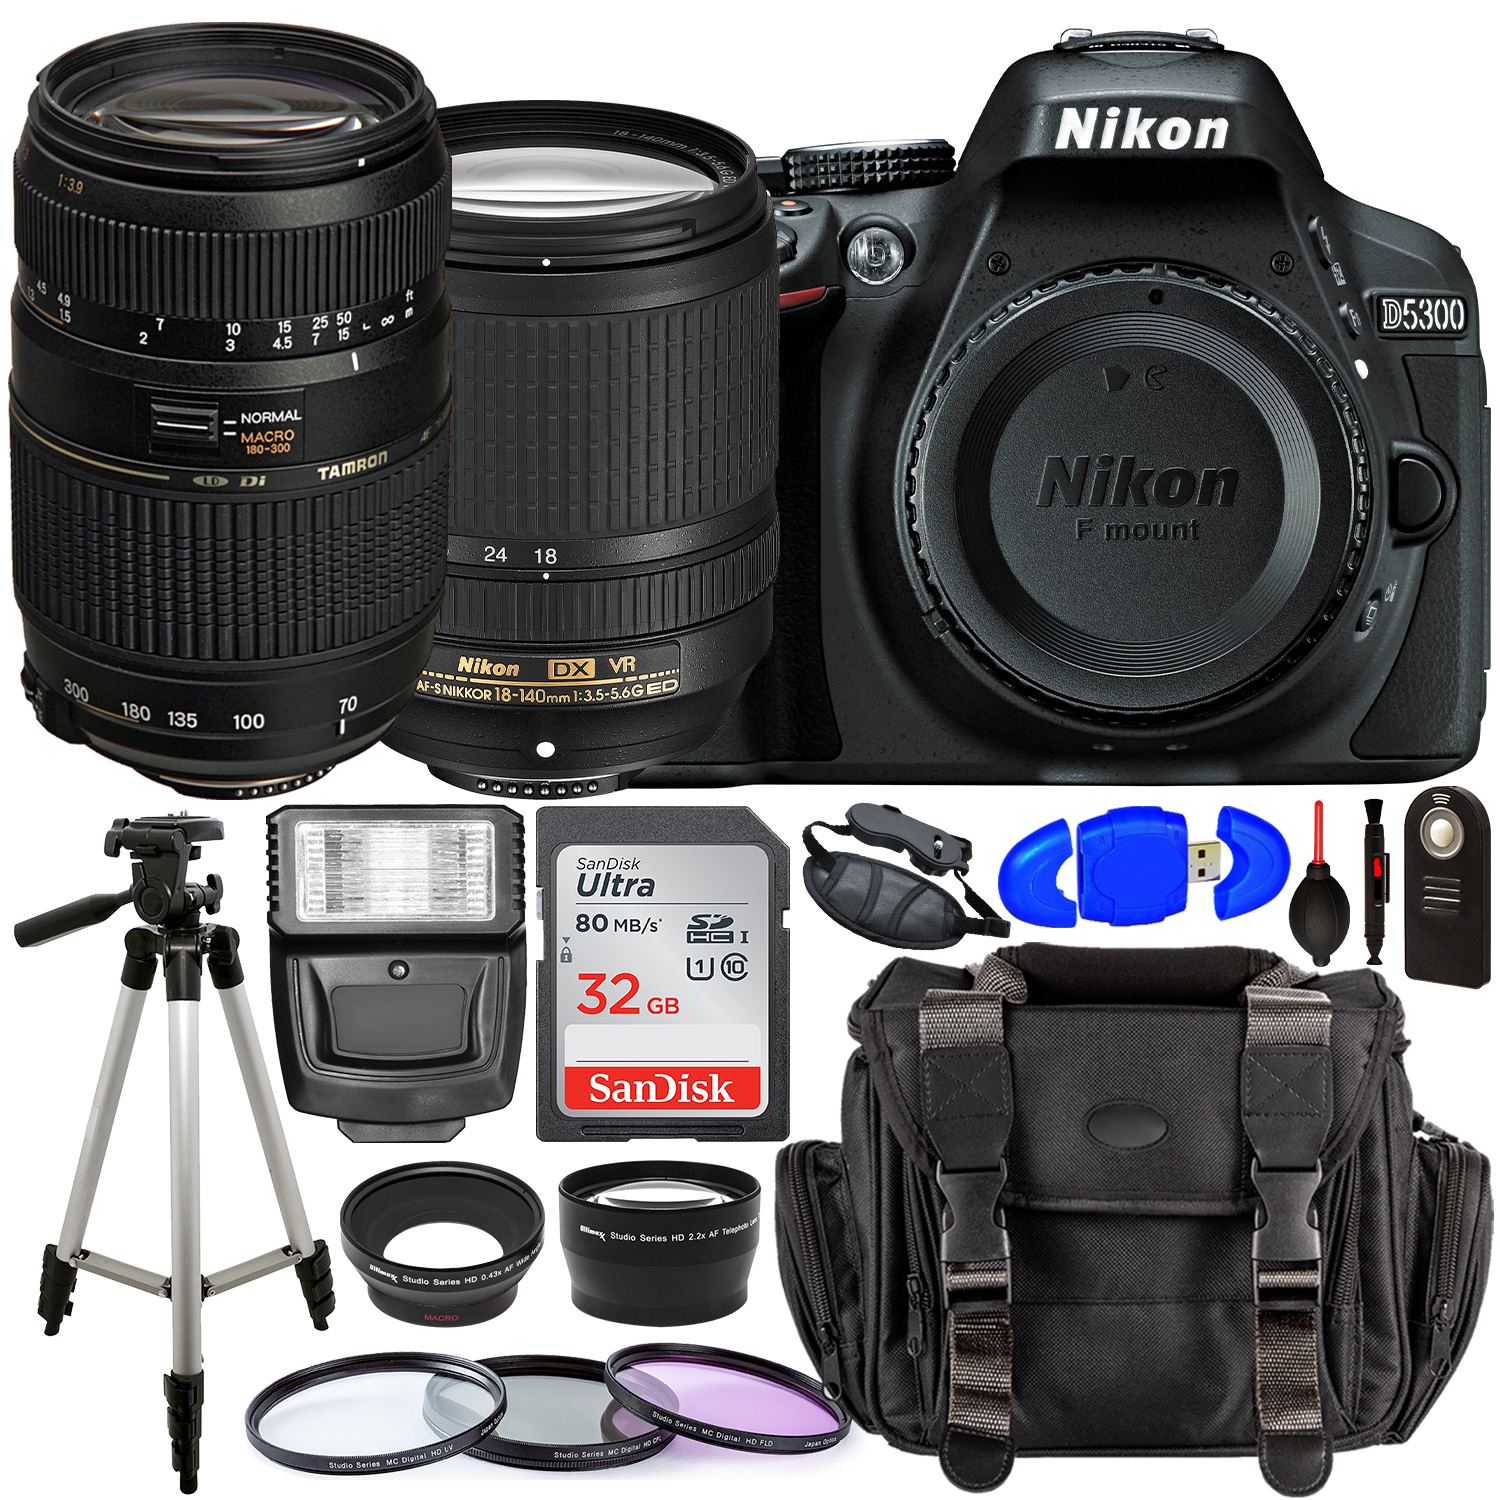 Nikon D5300 DSLR Camera with 18-140mm Lens (Black) â?? 1531 with Tamron 70-300mm Lens for Nikon AF - AF017NII-700 and Accessory Bundle